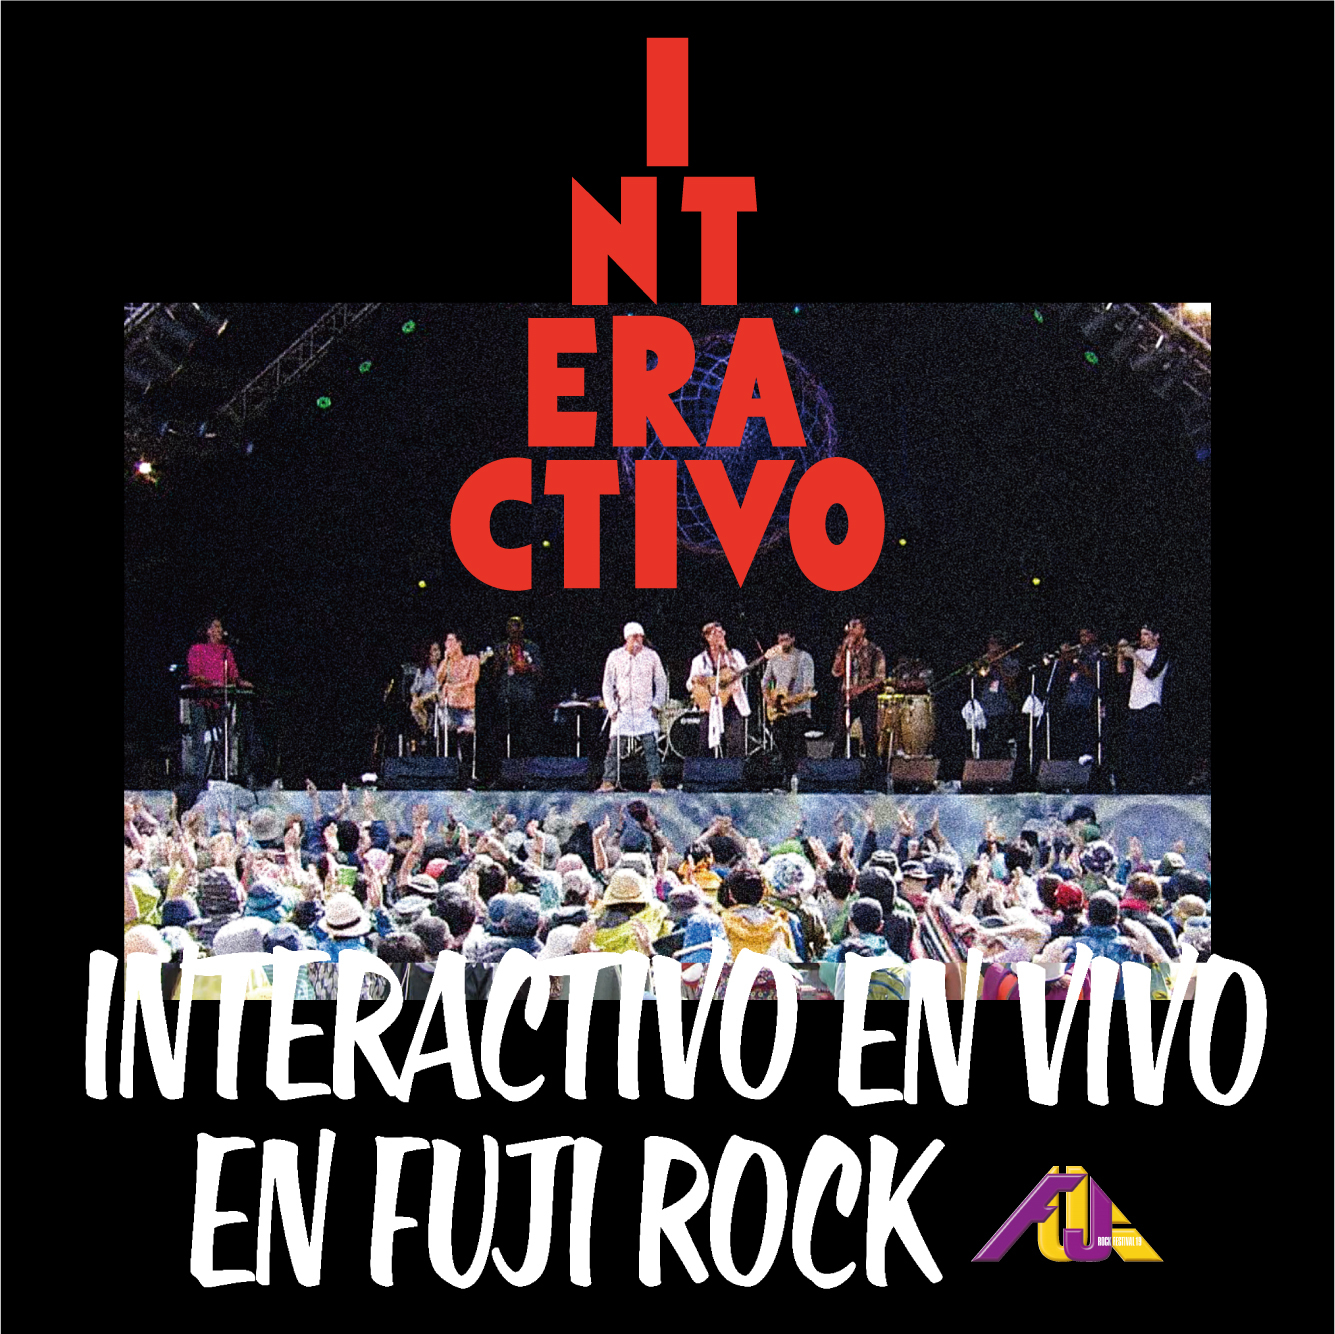 INTERACTIVO『INTERACTIVO EN VIVO EN FUJI ROCK』